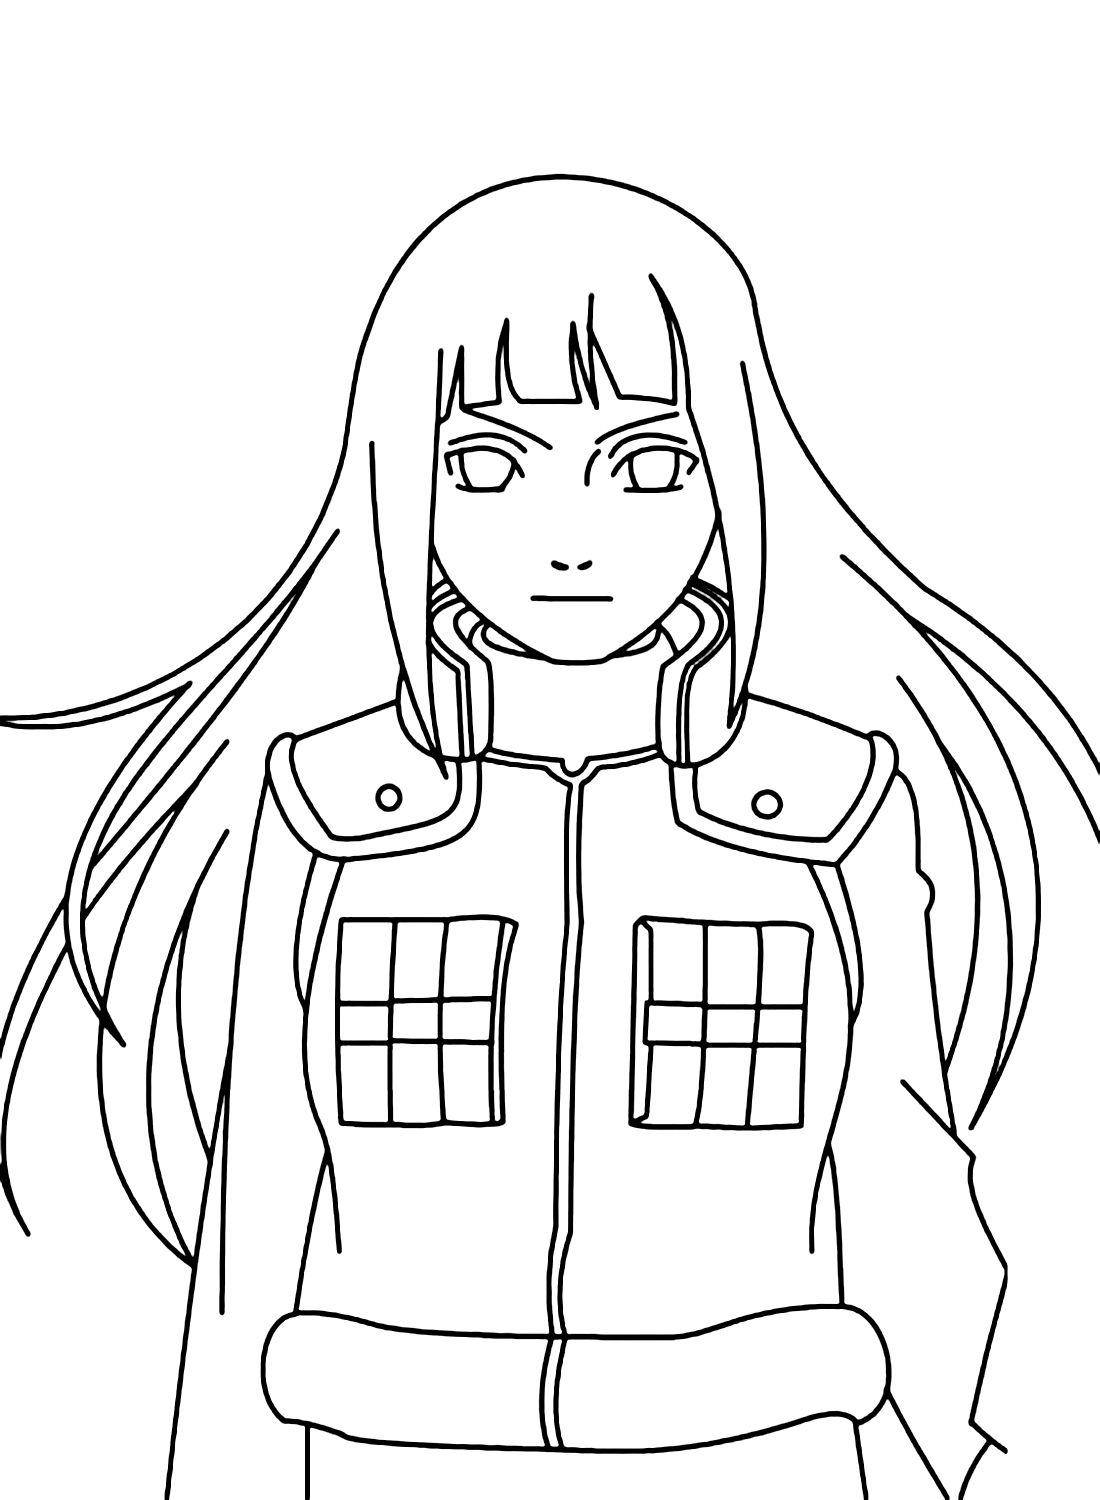 Hyuga Hinata From Naruto Coloring Page from Hyuga Hinata